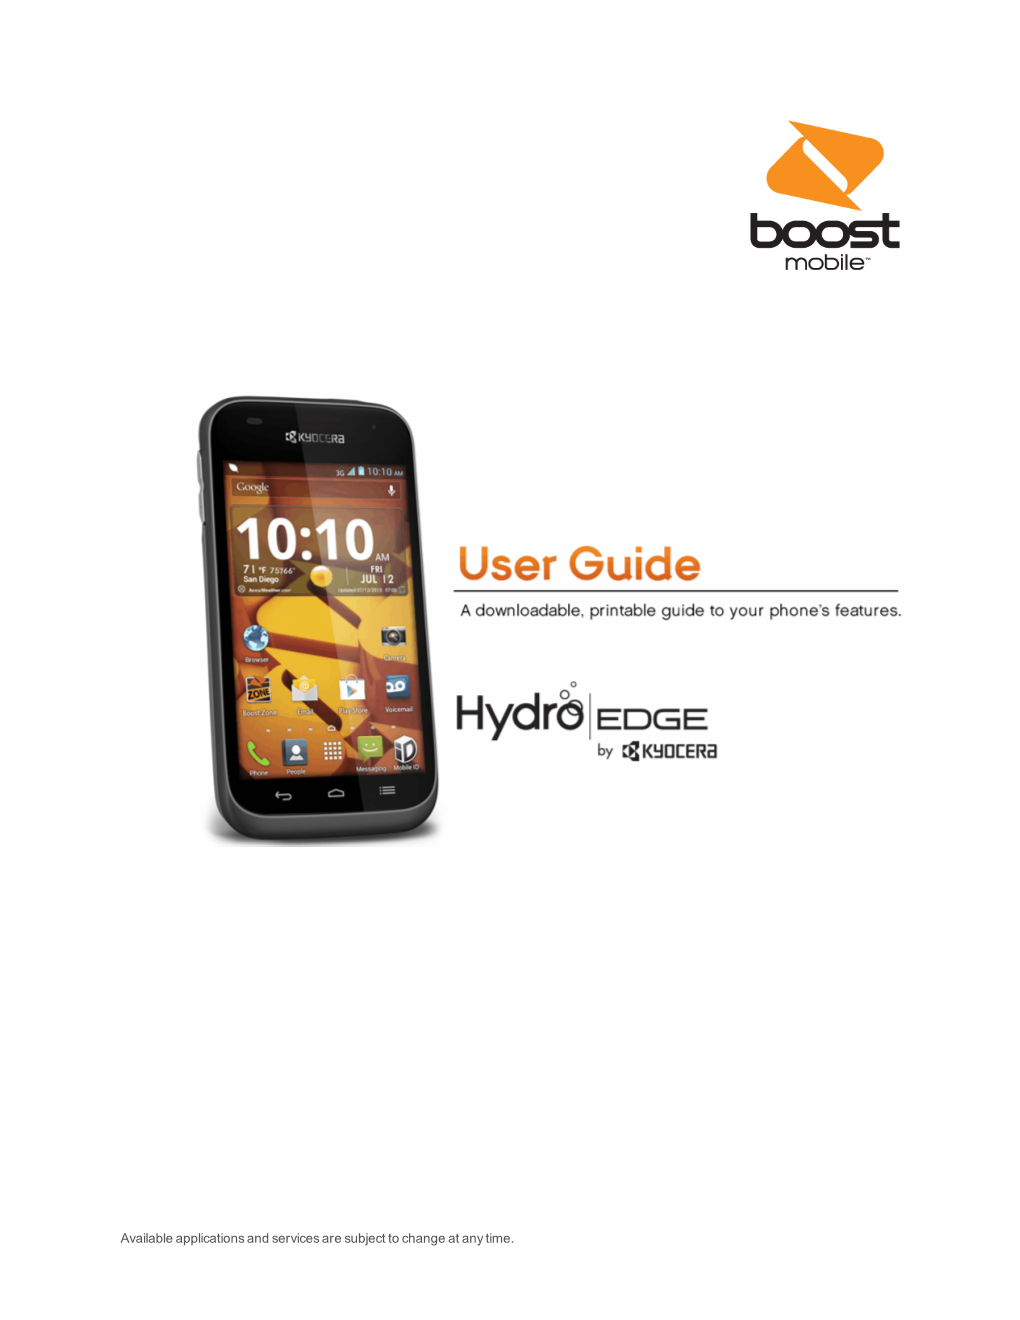 Kyocera Hydro Edge User Guide